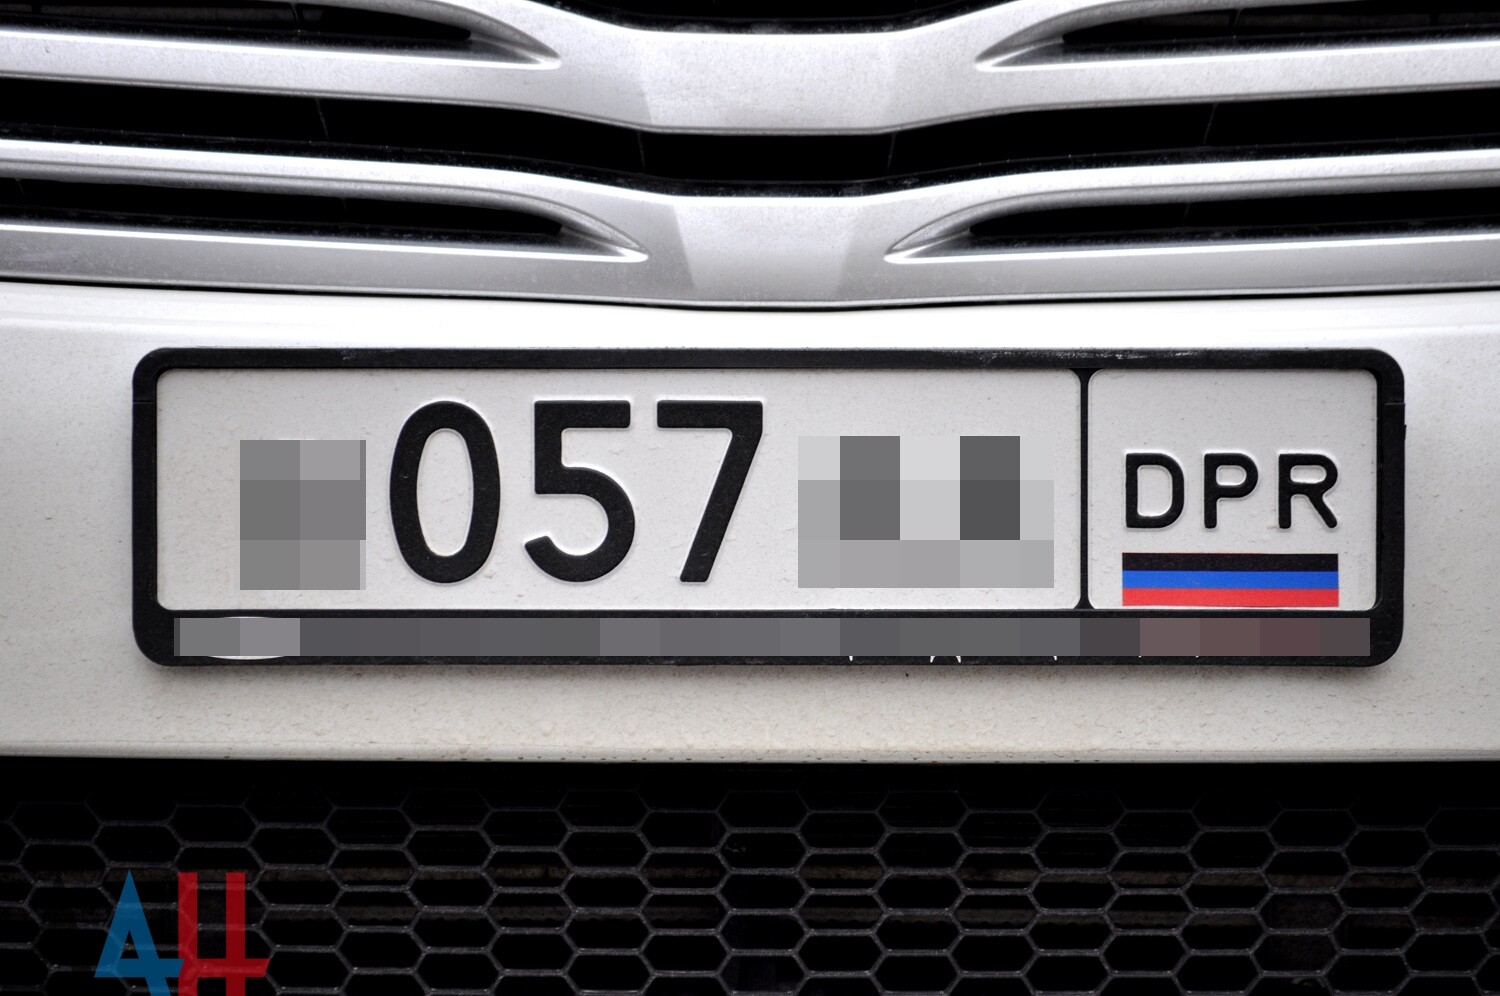 Dpr это. Автономера Донецкой народной Республики. Автомобильный гос номер ДНР. Гос номер Донецка. Номерной знак ДПР что это.